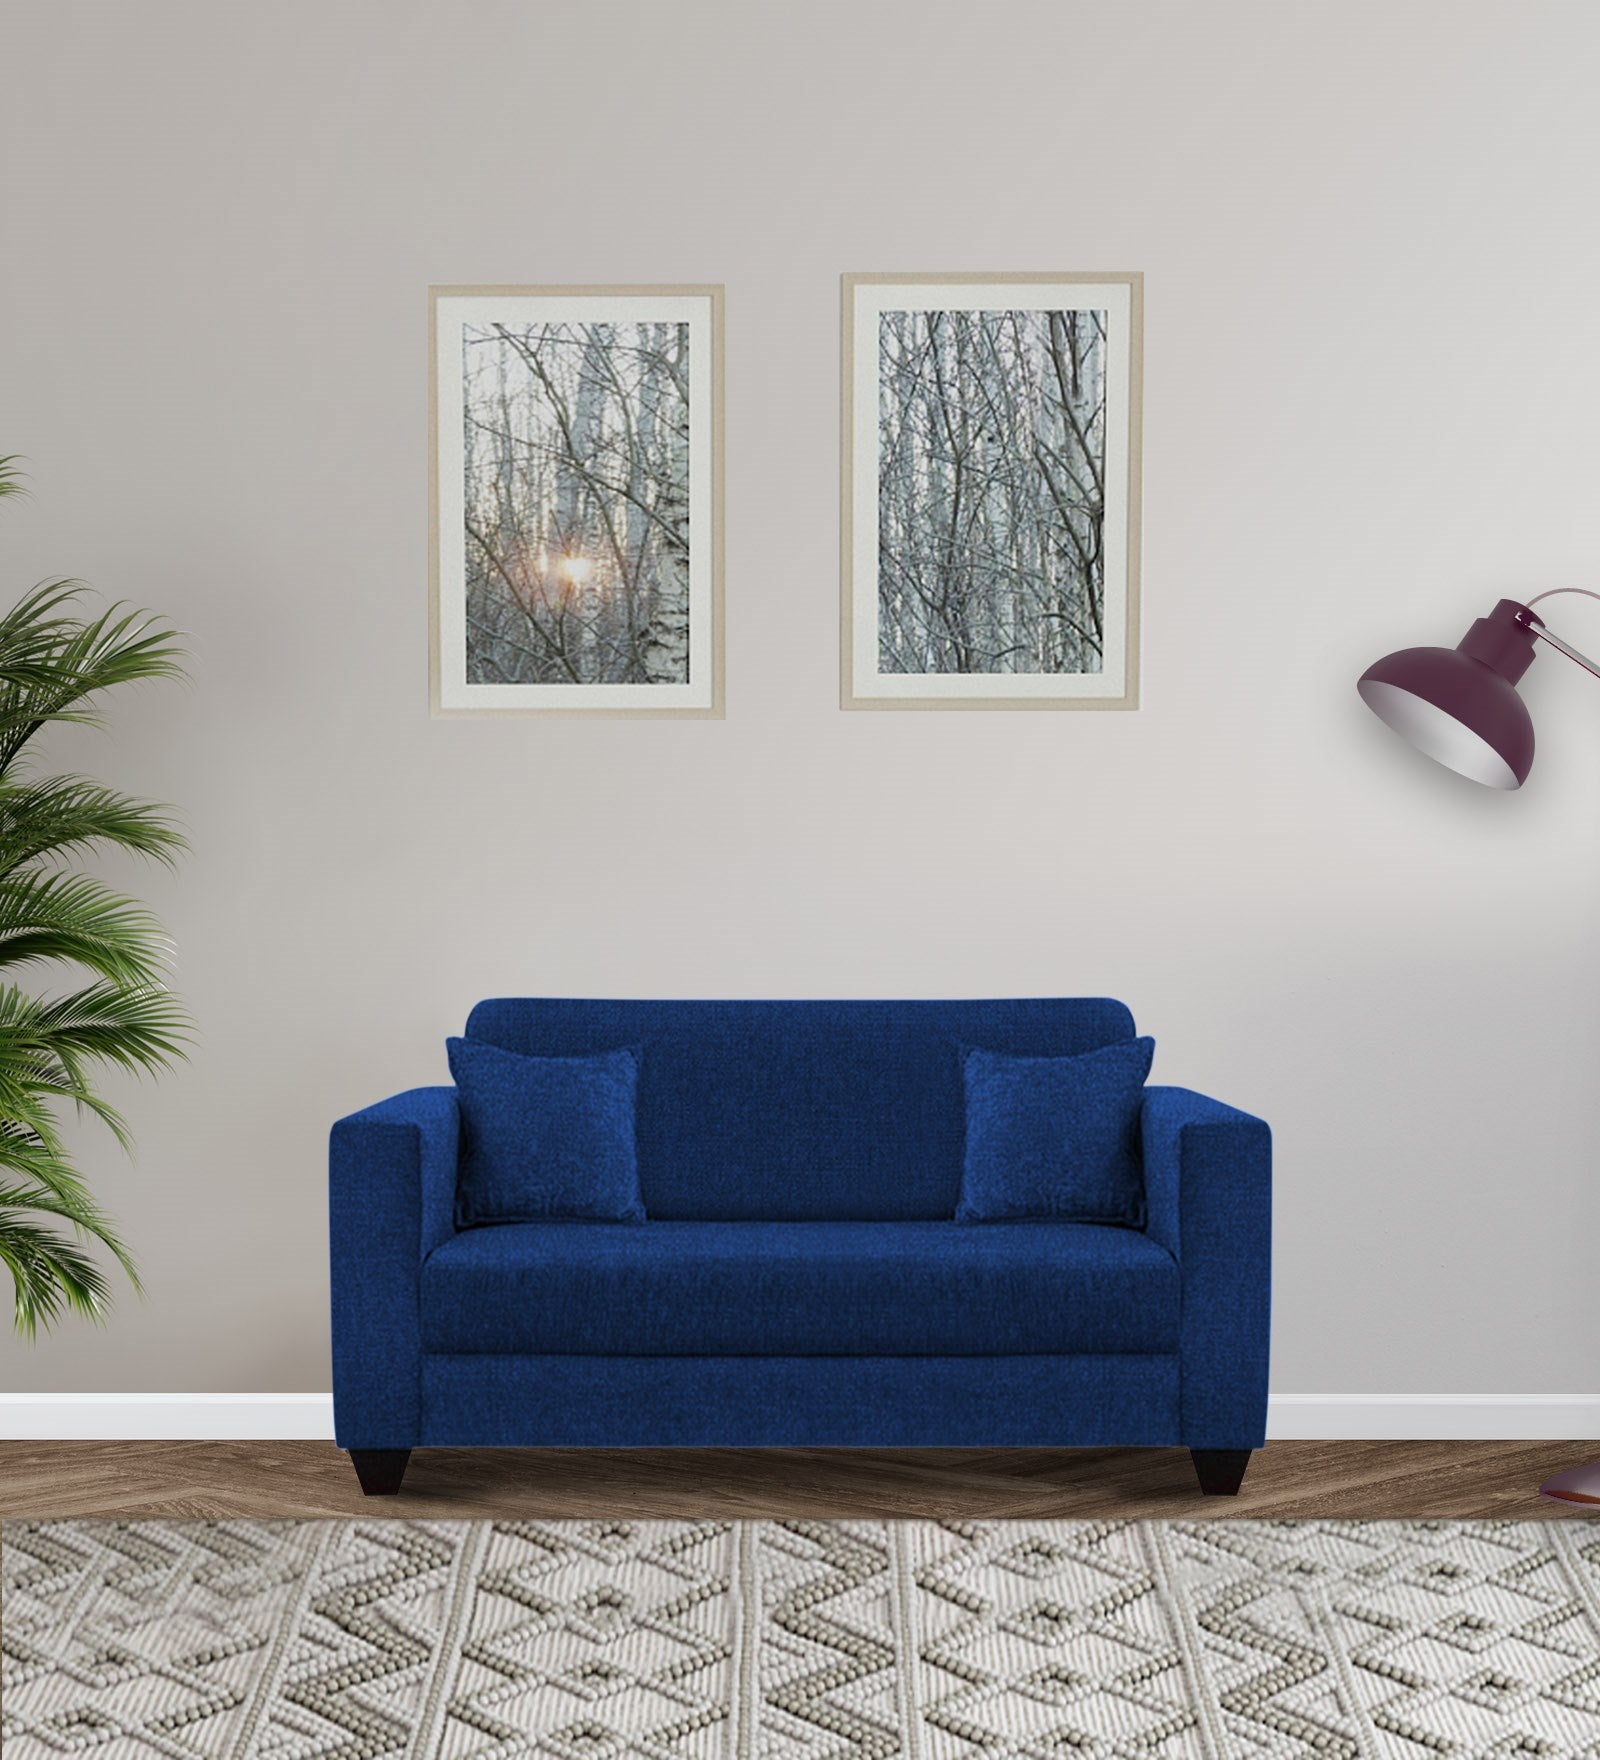 Nebula Fabric 2 Seater Sofa in Royal Blue Colour